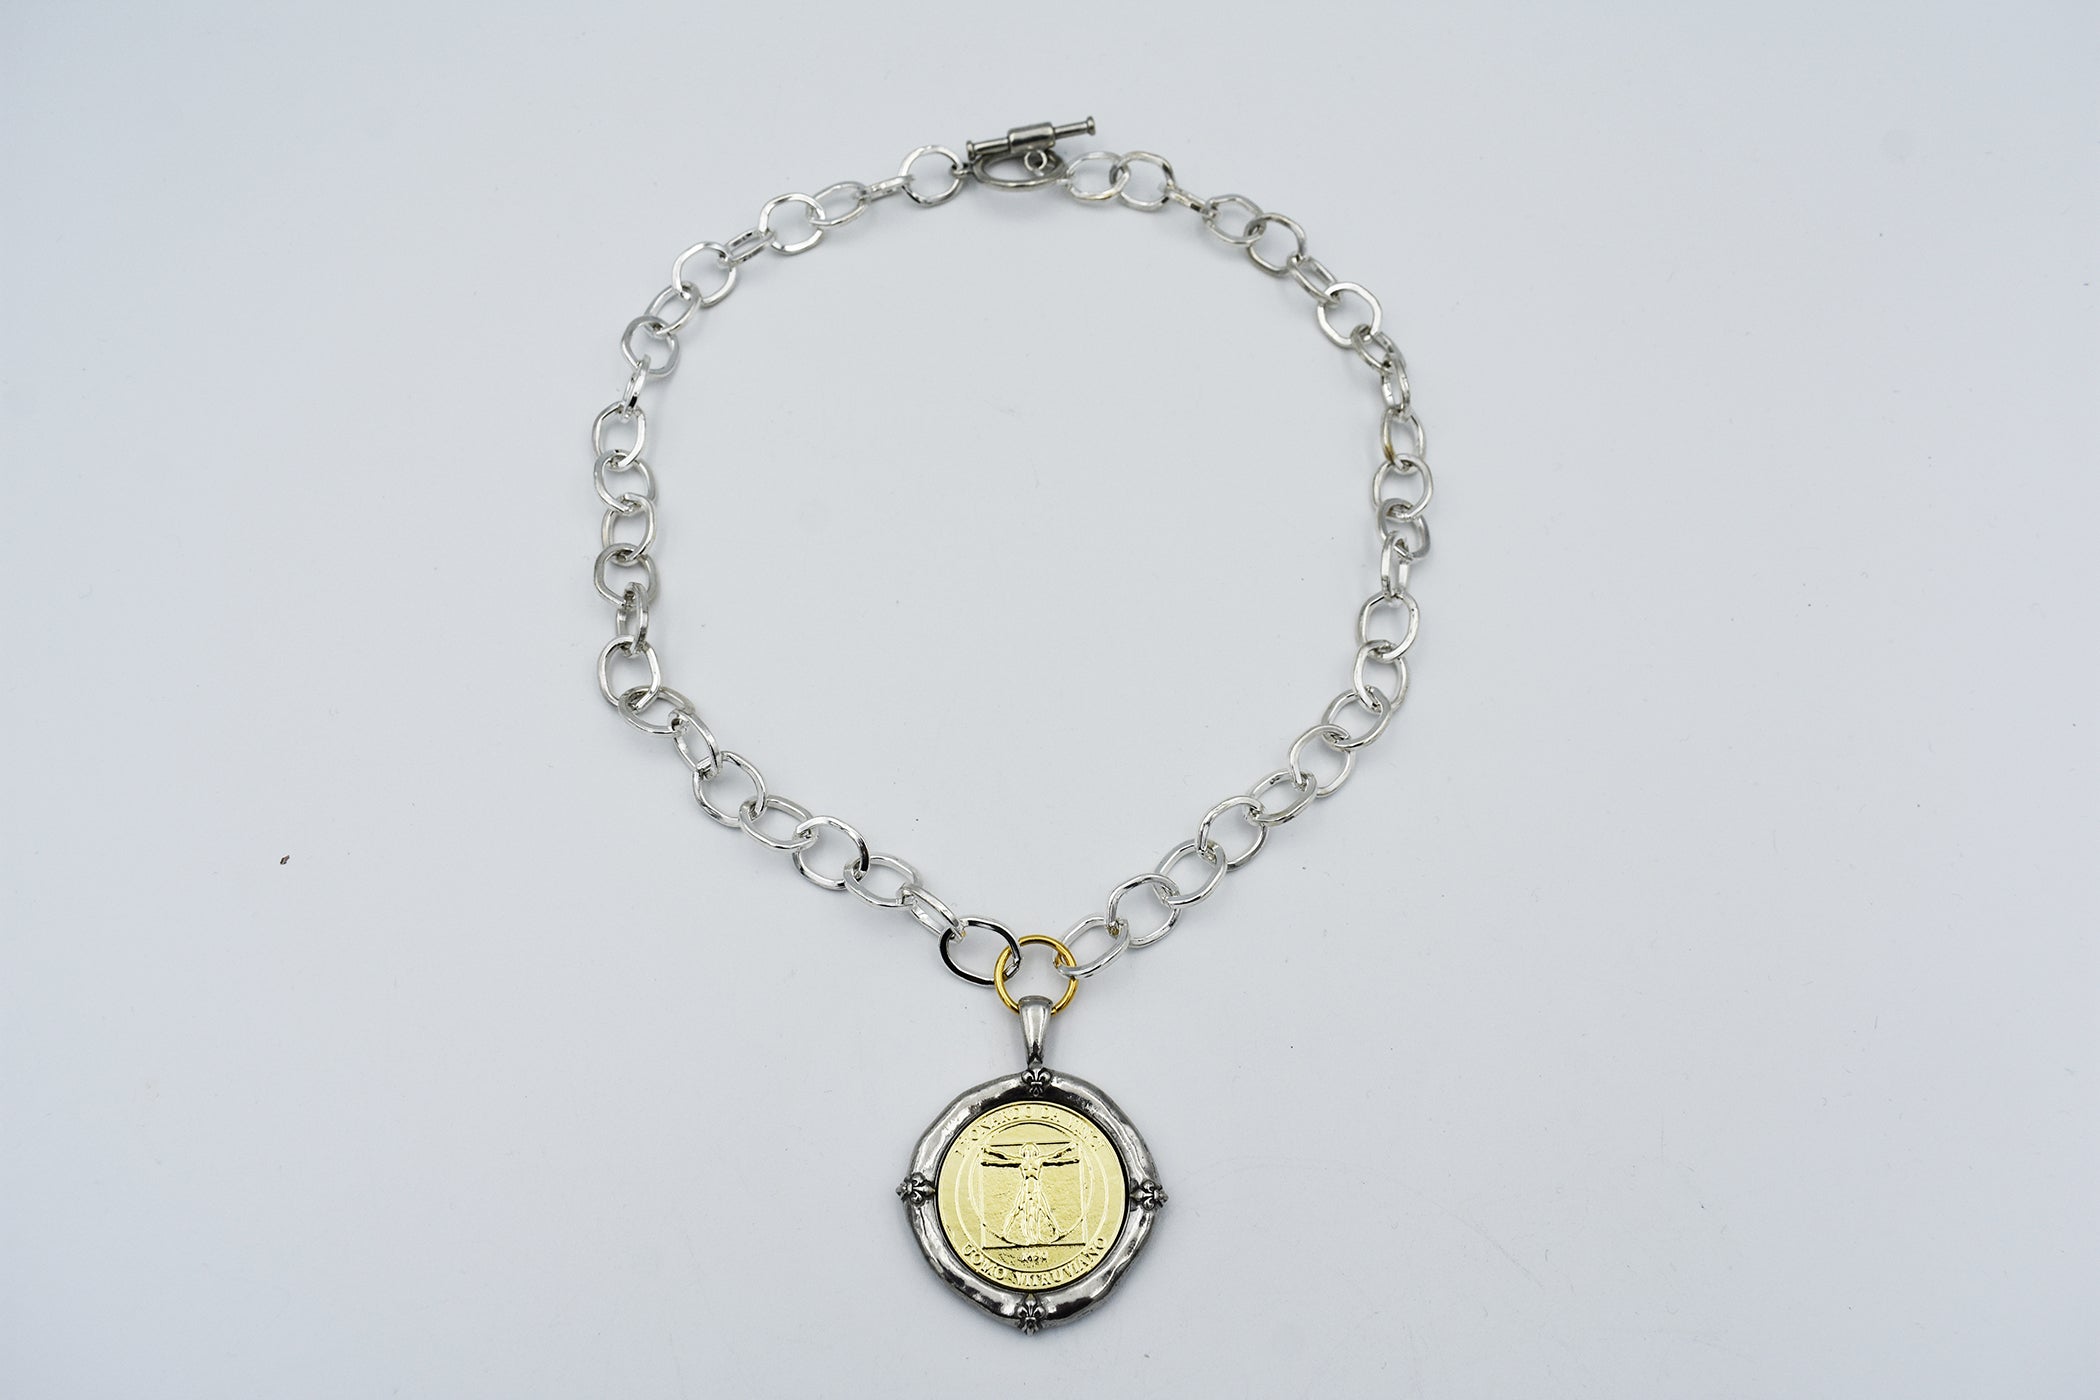 Italian Treasures Collection Silver Chain Necklace with Leonardo Da Vinci